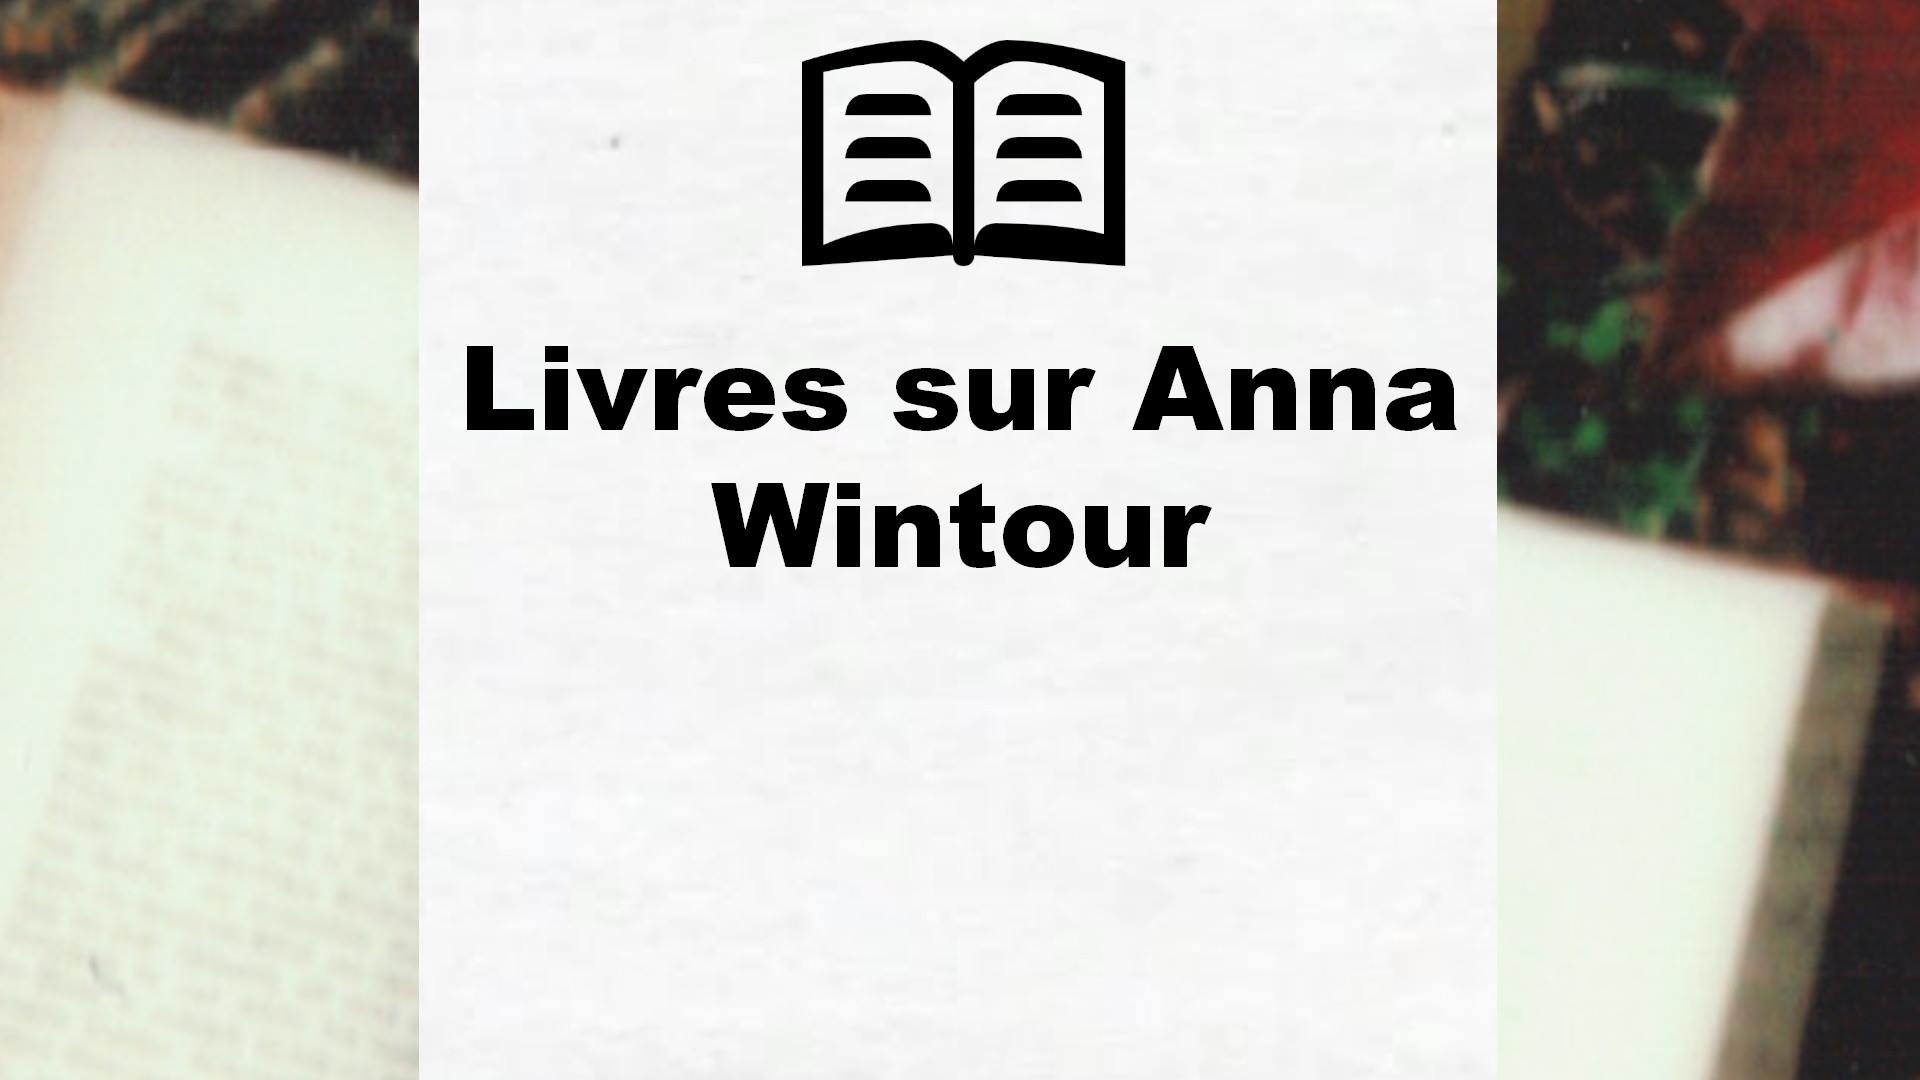 Livres sur Anna Wintour